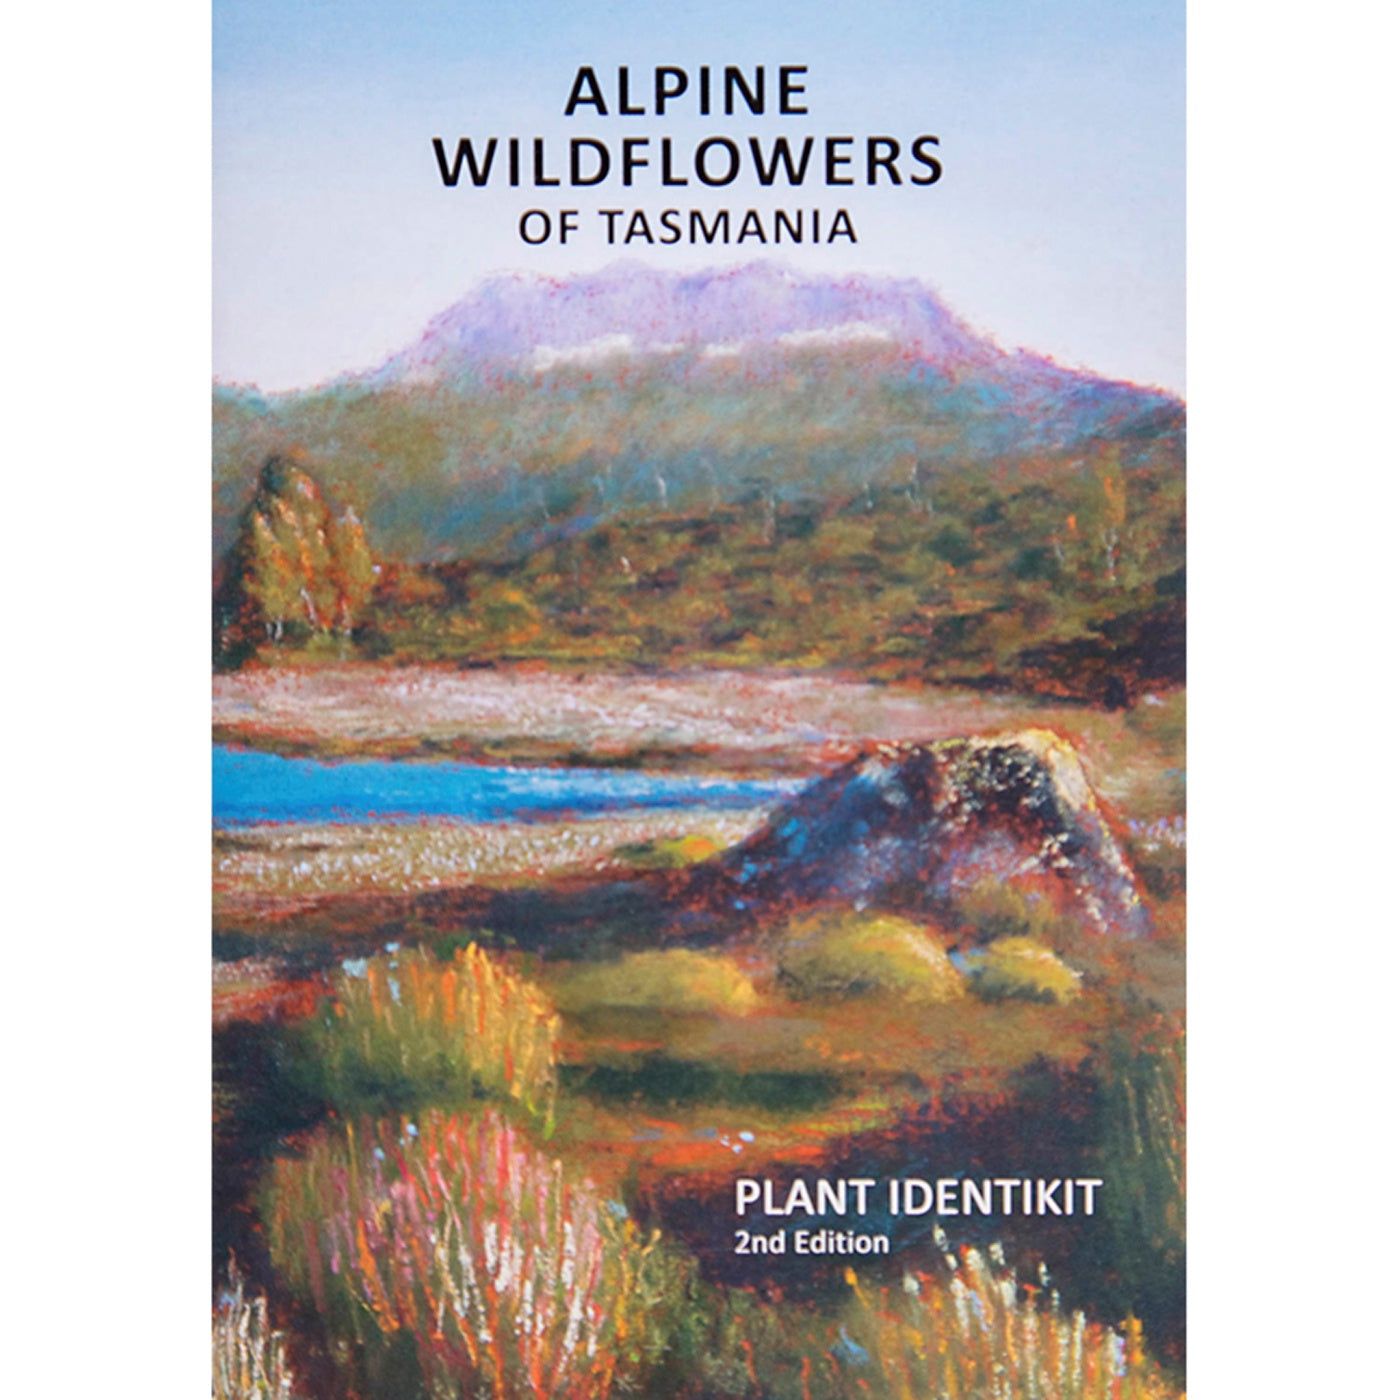 Plant Identikit - Alpine Wildflowers of Tasmania